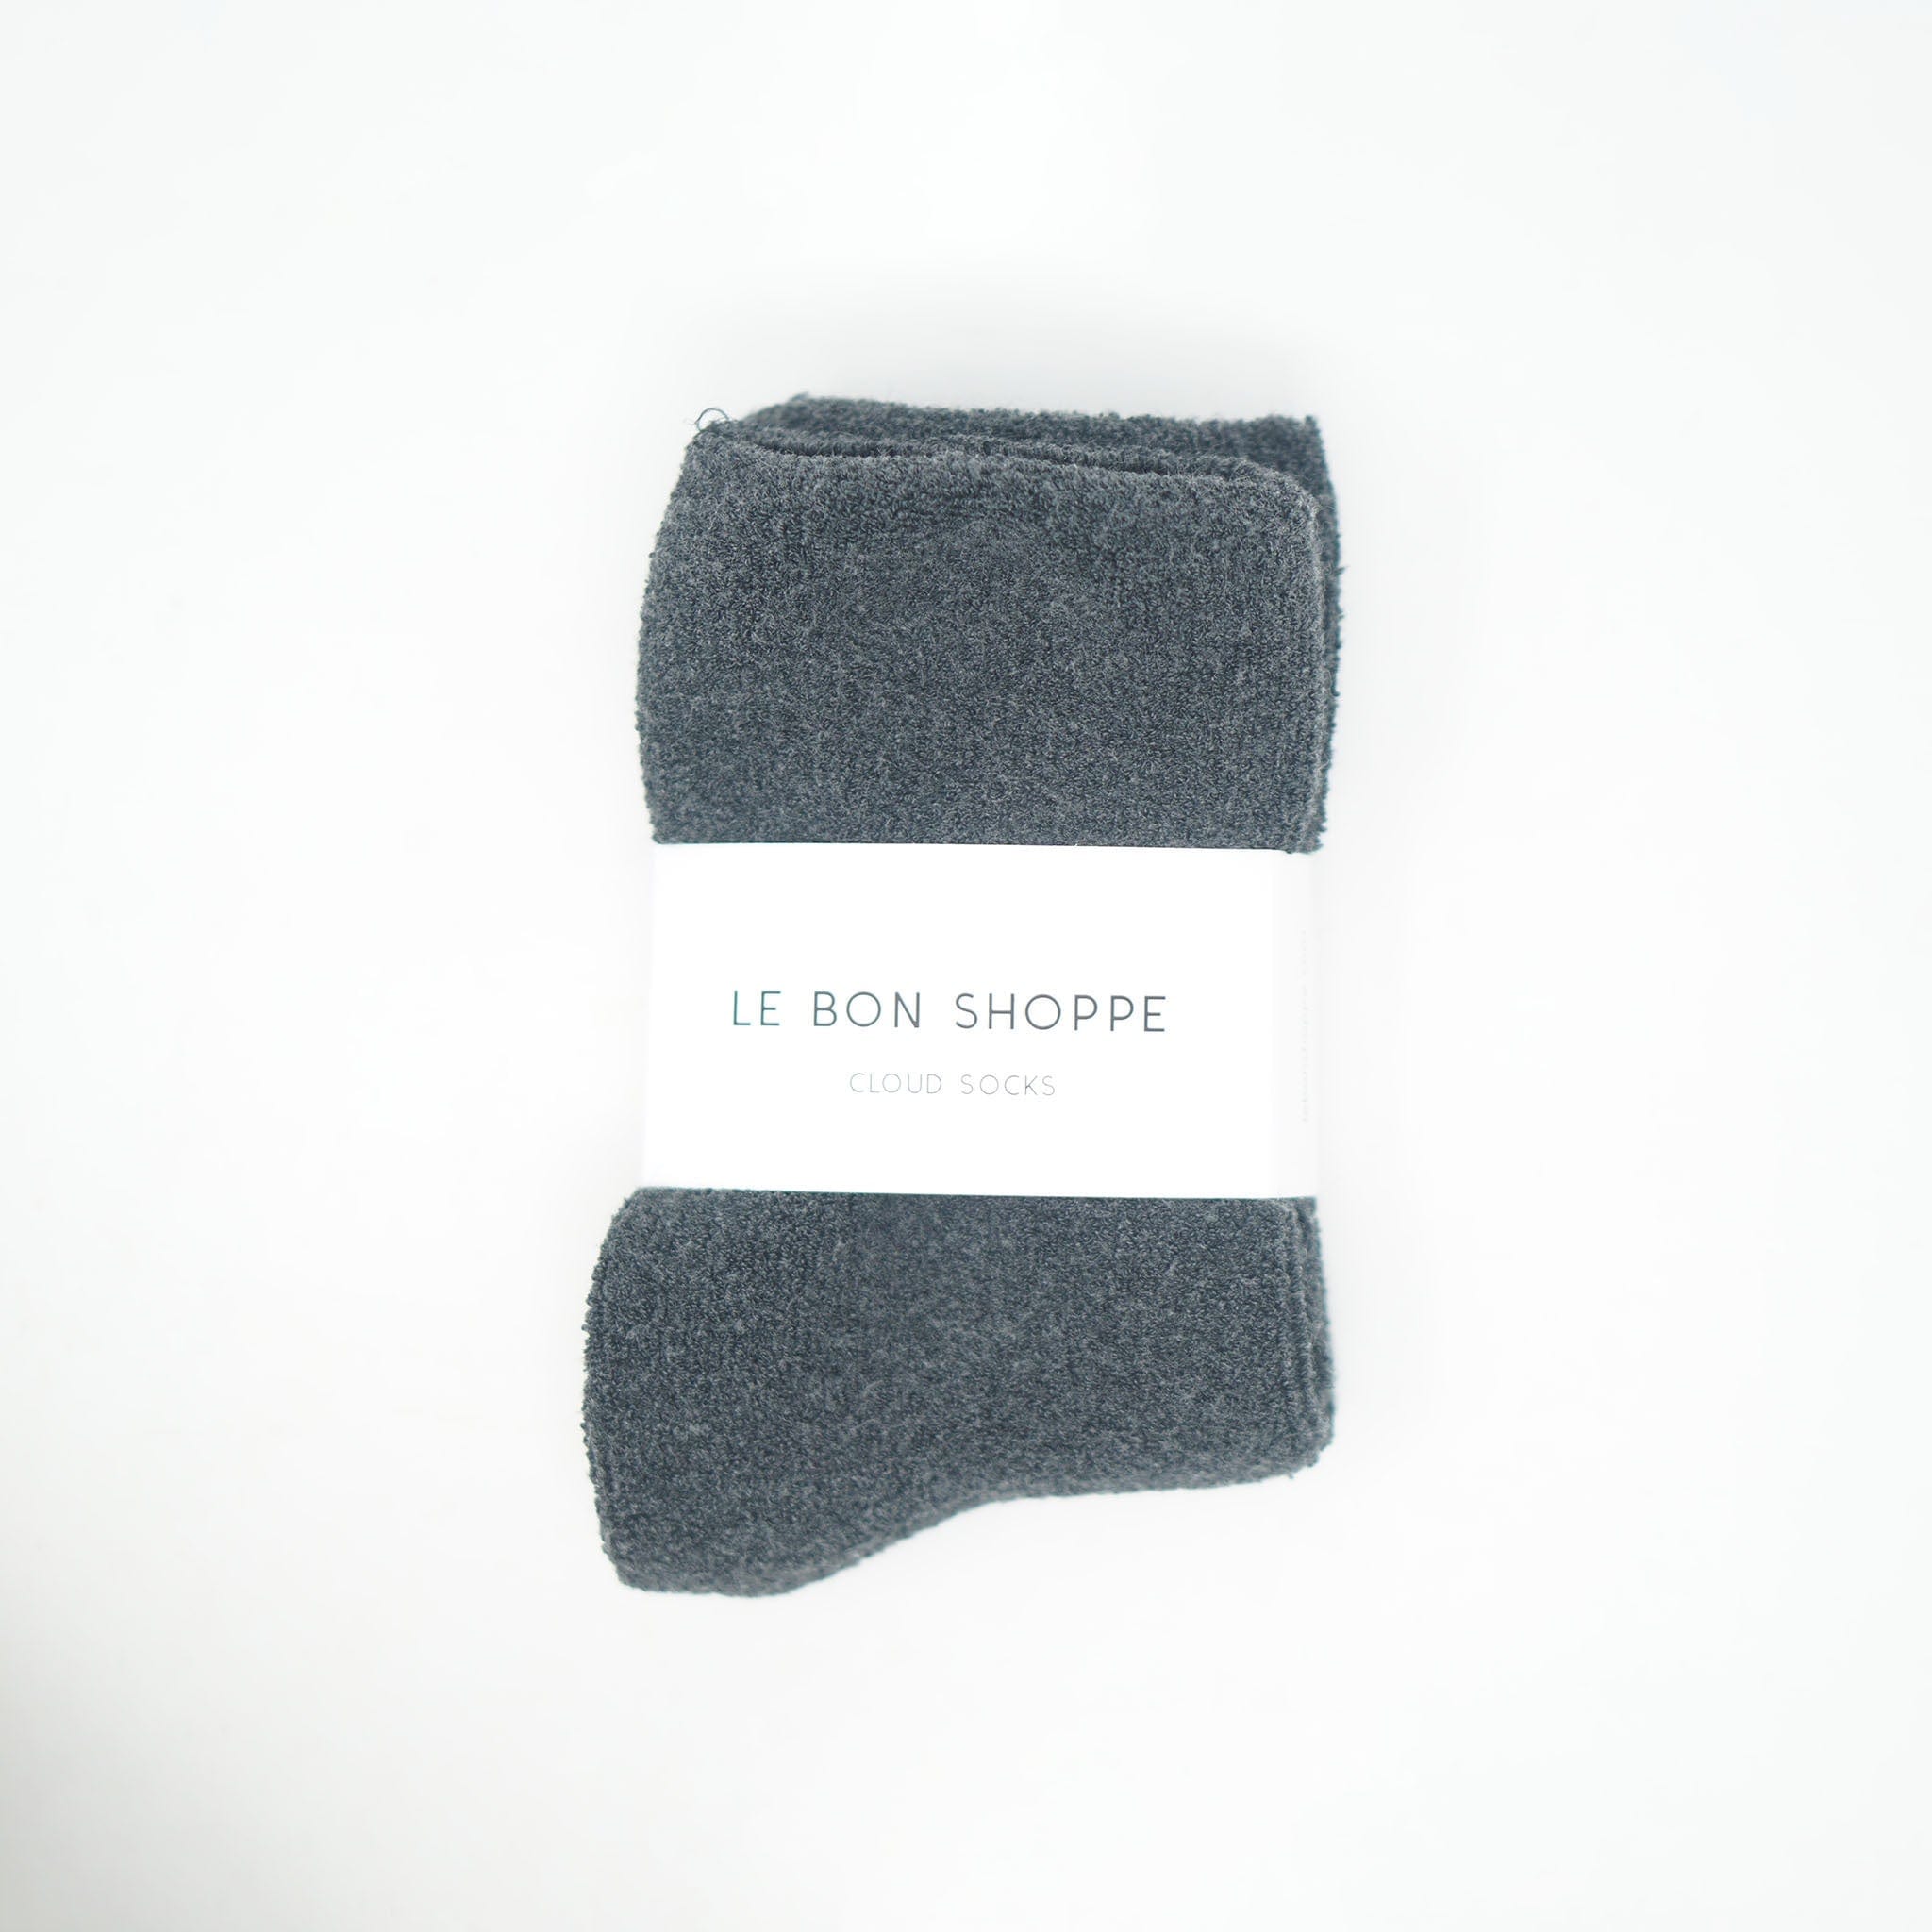 Le Bon Shoppe Cloud Socks Charcoal Socks  - ZIGZAG Footwear